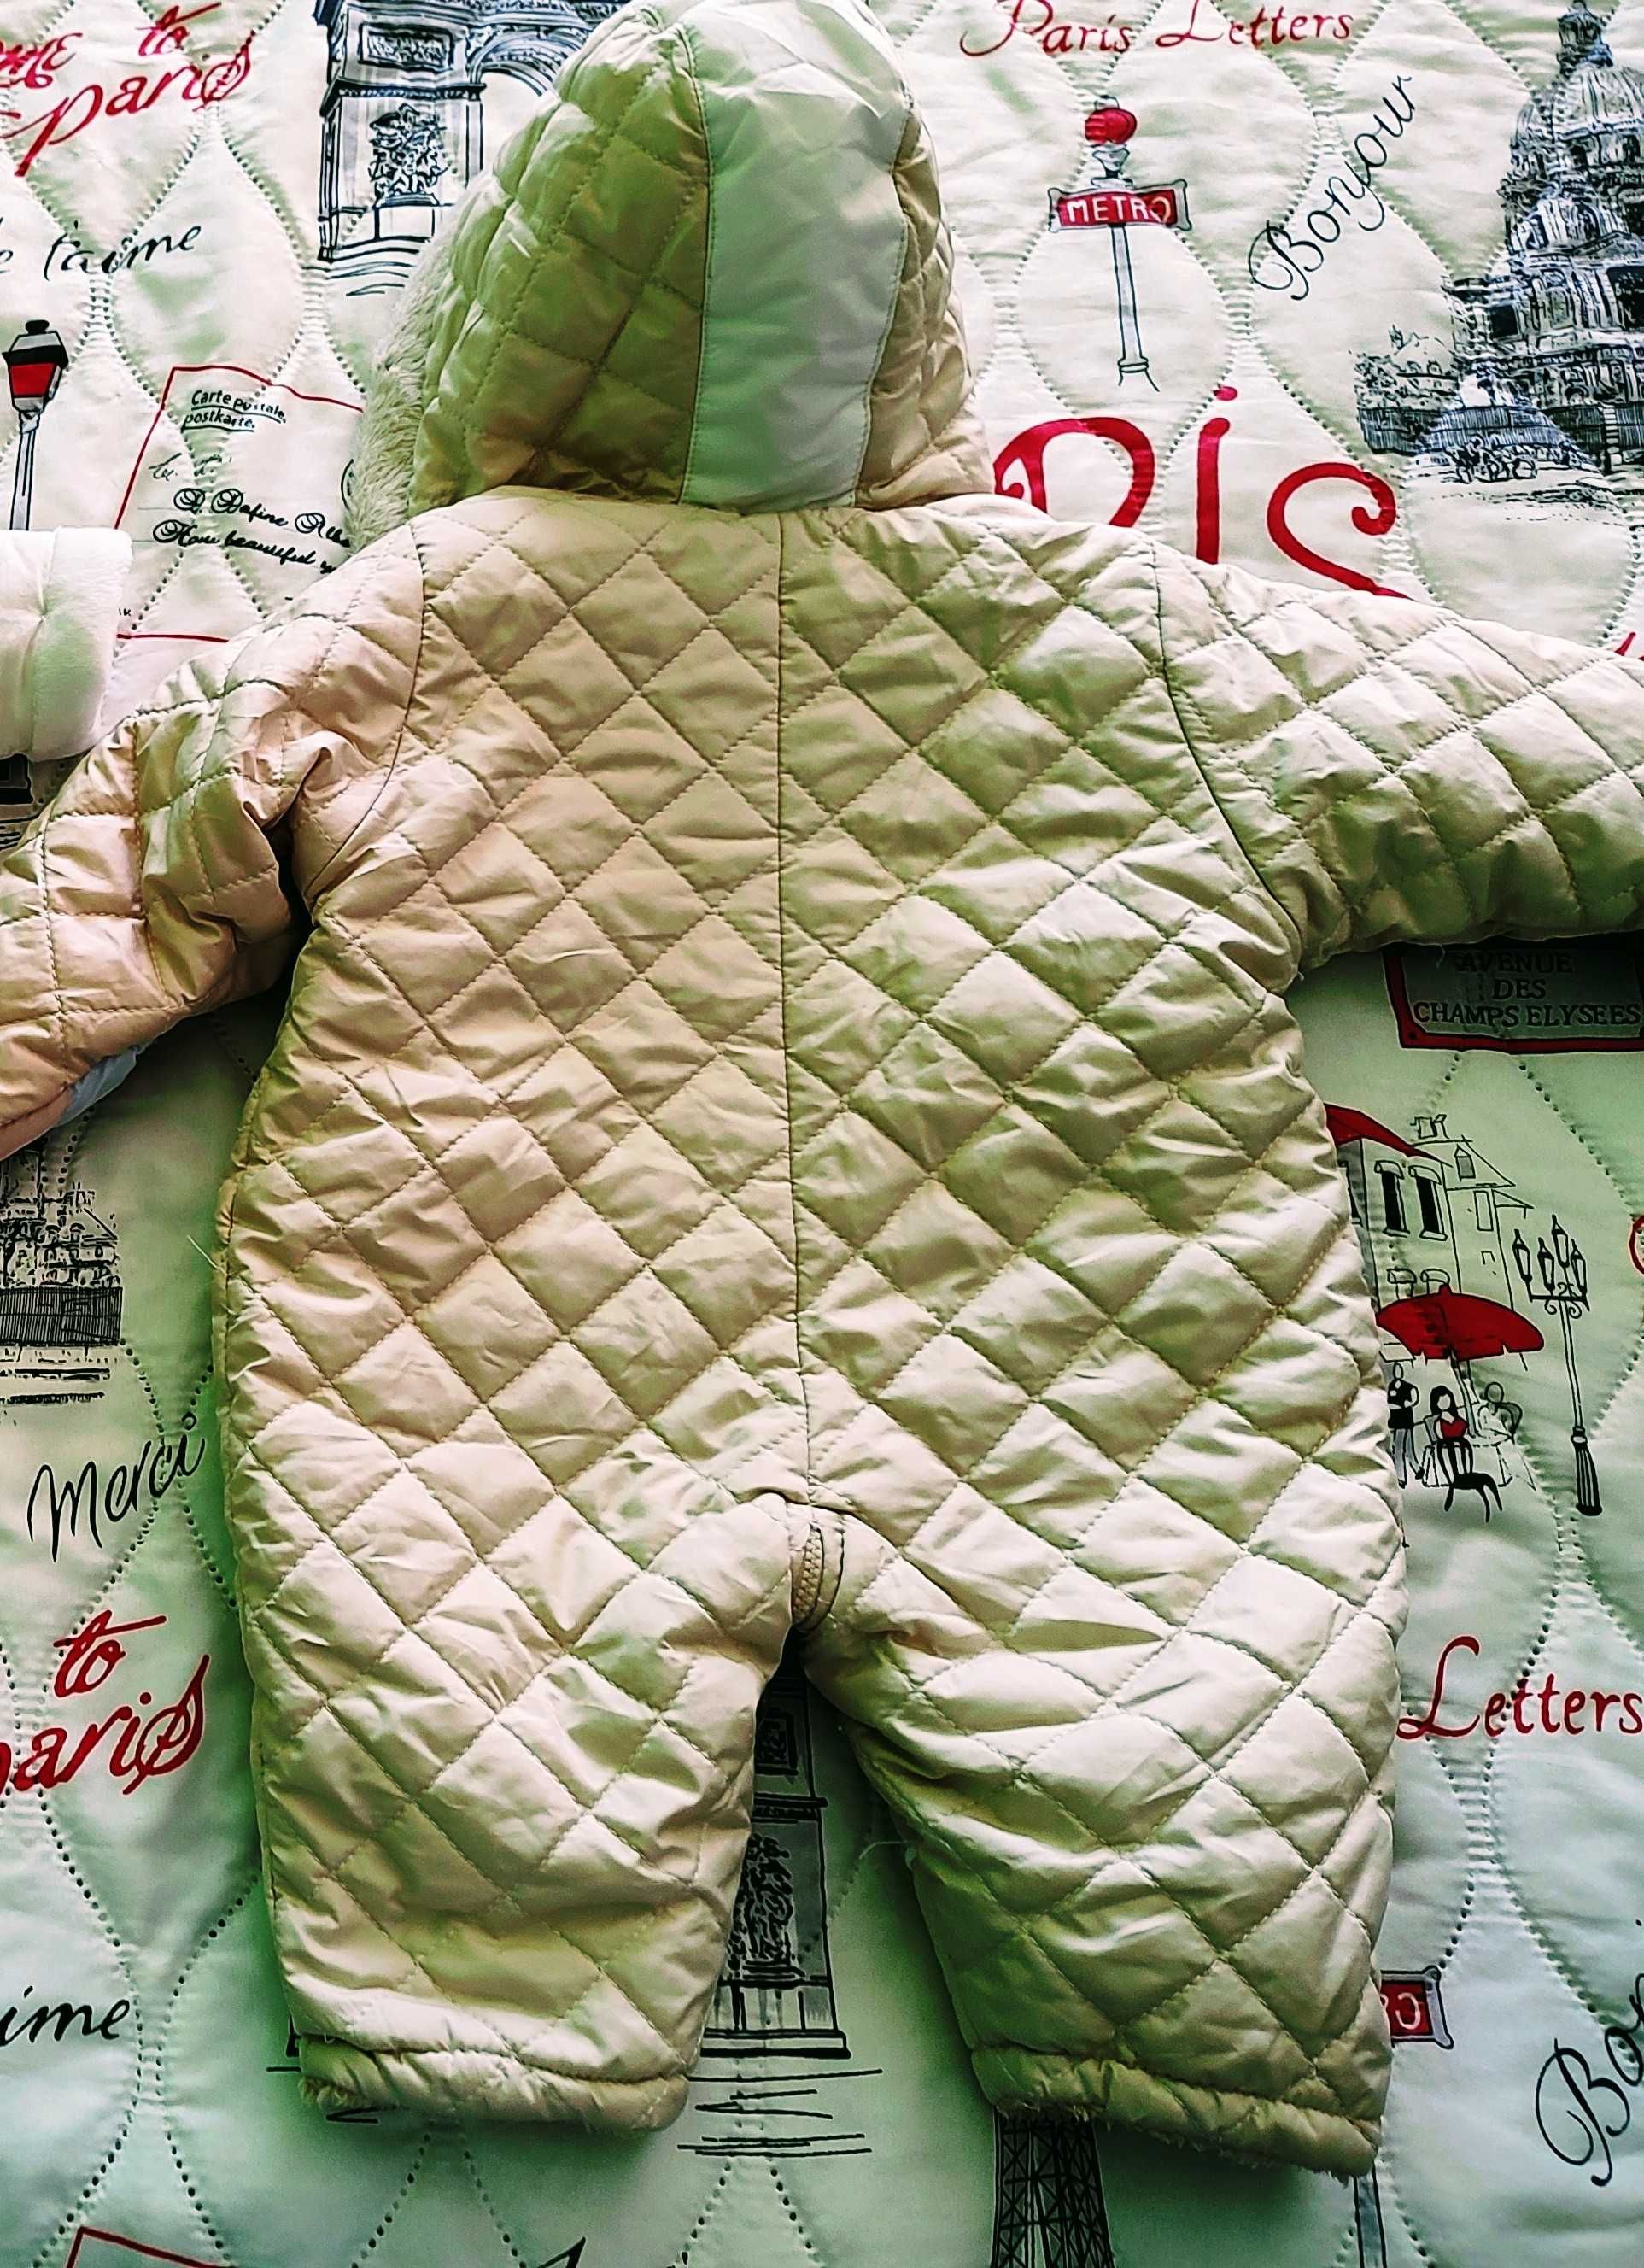 Ескимос, бебе връхна дреха, бебешки космонавт, гащеризон, яке,